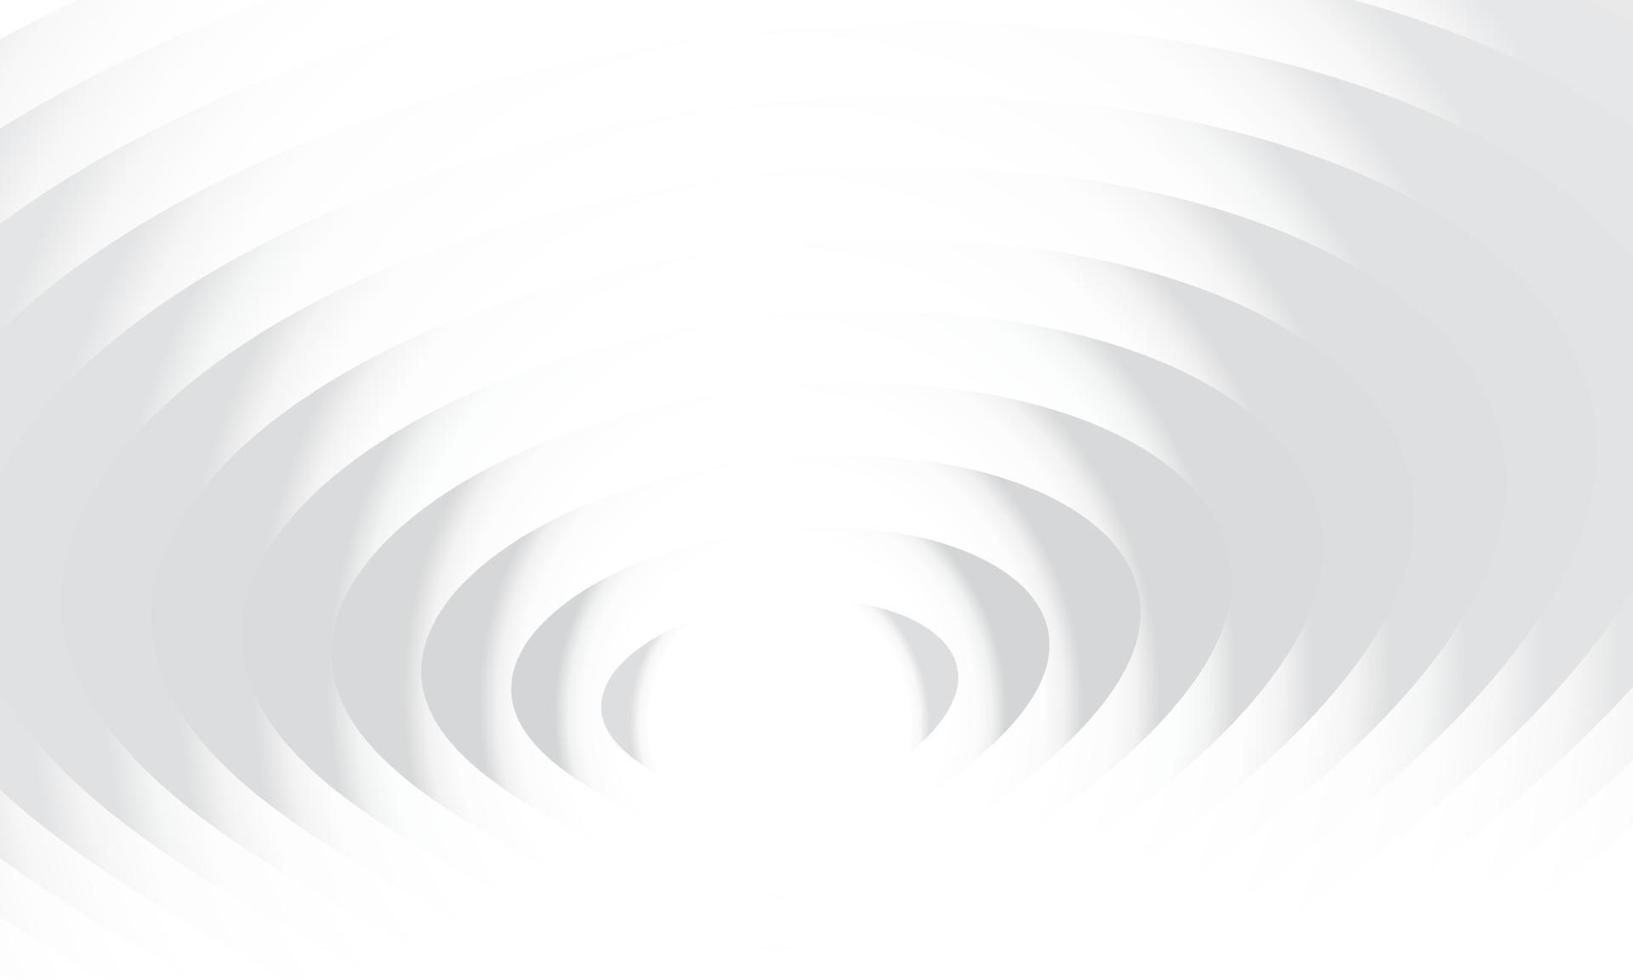 relevo de topografia de papel branco. fundo de corte de papel abstrato. decoração realista de corte de papel texturizado vetor